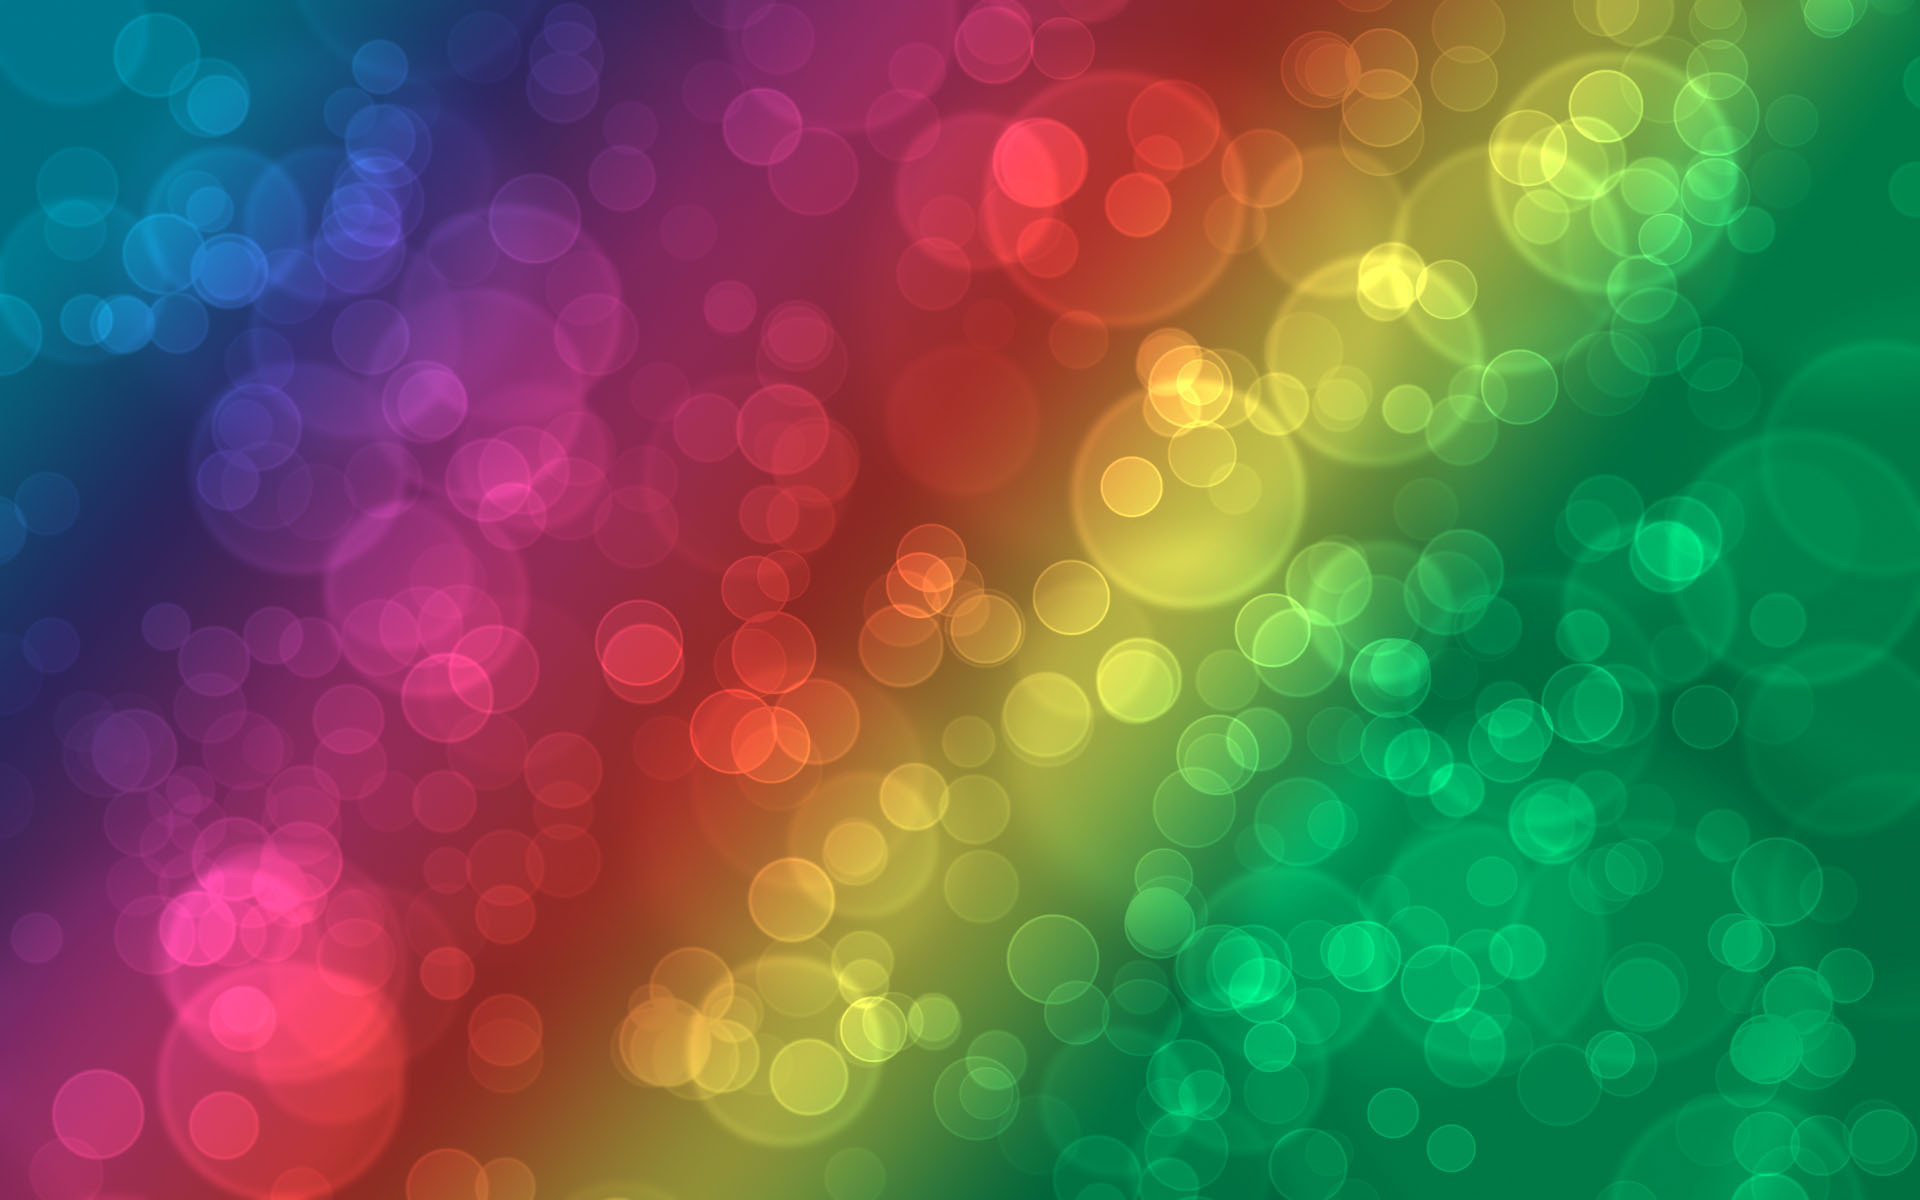 عکس پس زمینه آبسترکت به شکل حباب های تار رنگین کمانی برای موبایل 